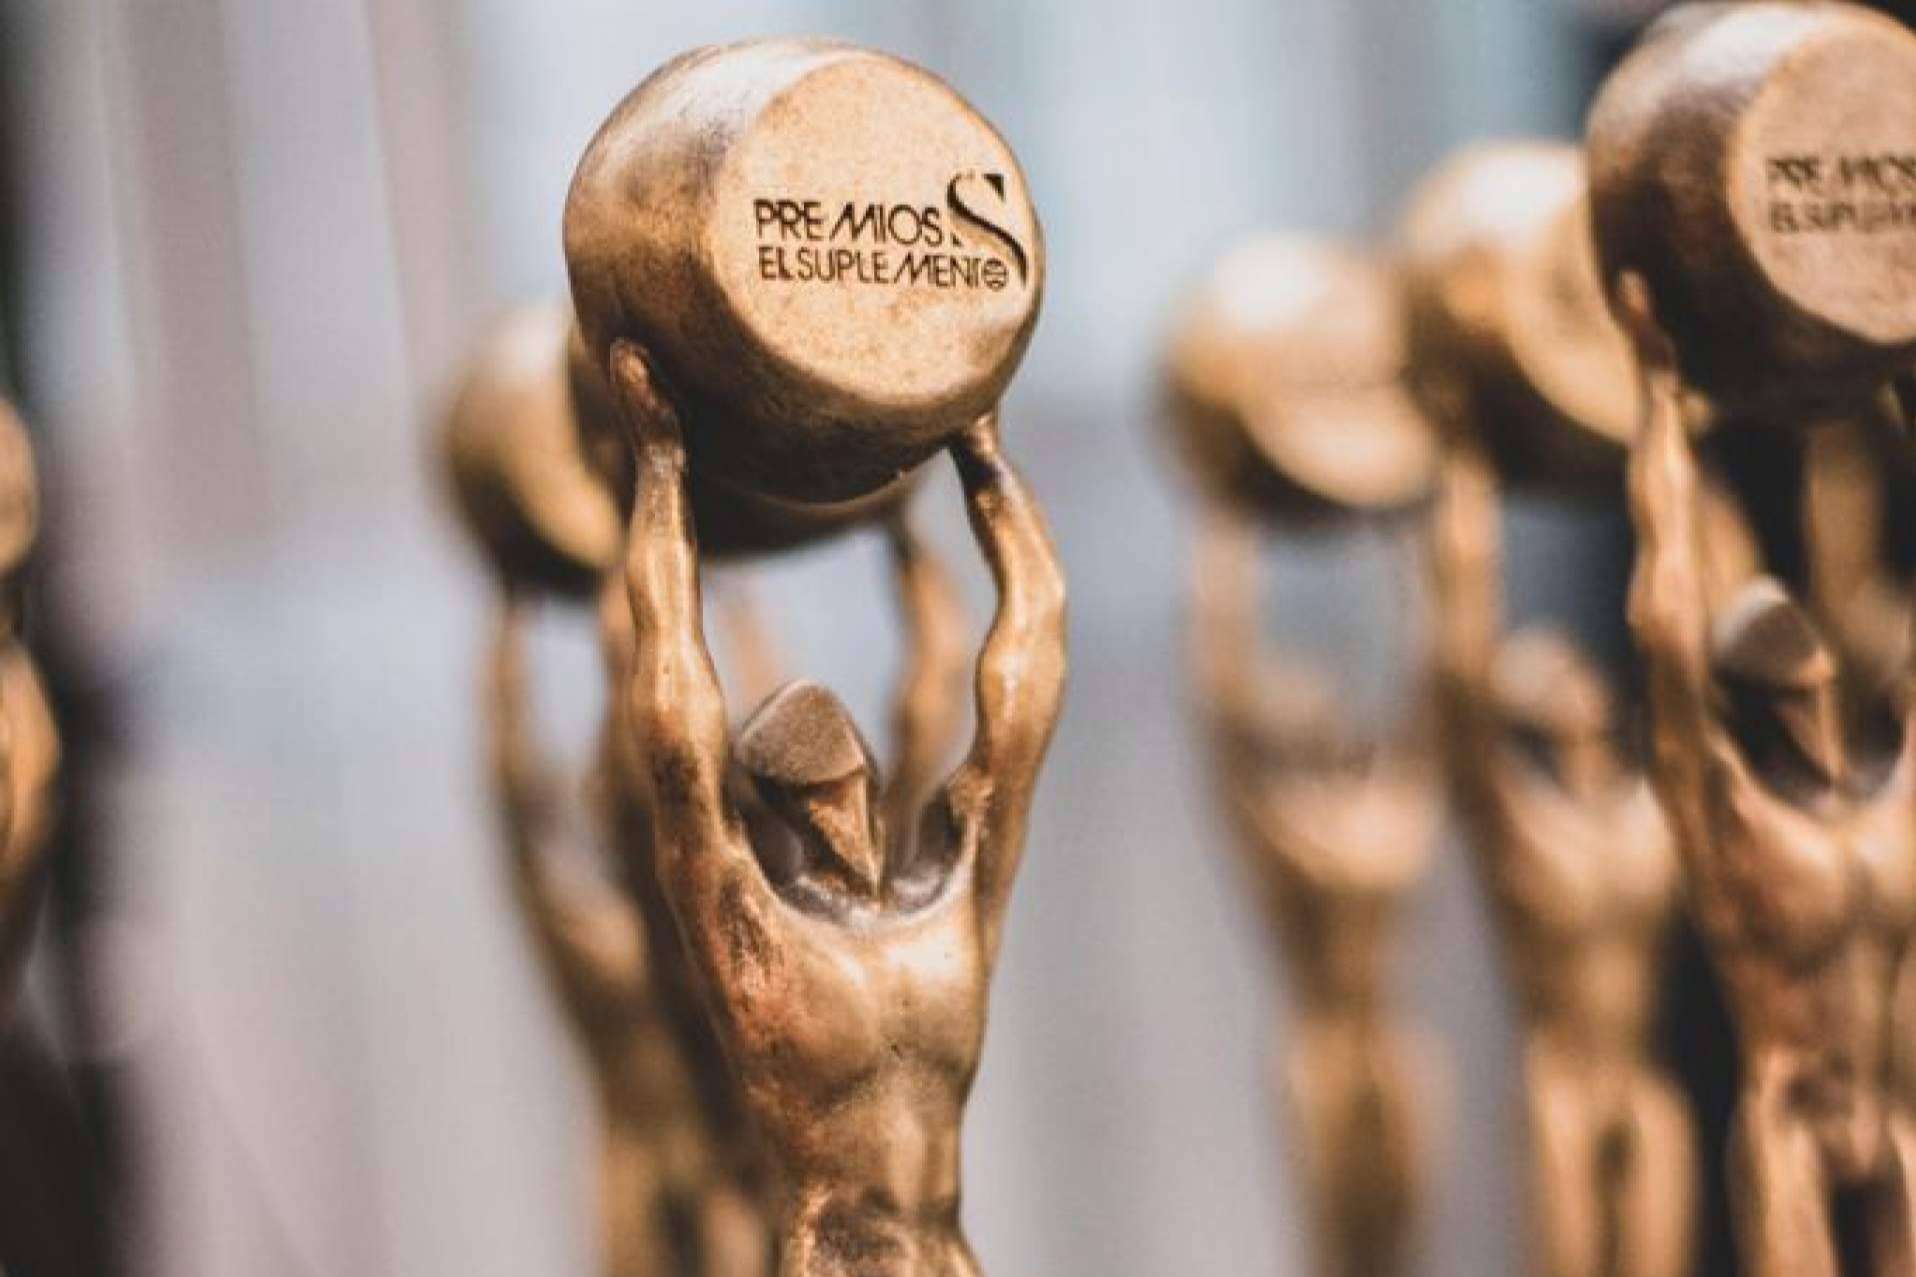 Best House se alza con el galardón a Mejor Franquicia Inmobiliaria en la 10ª edición de los Premios Nacionales El Suplemento